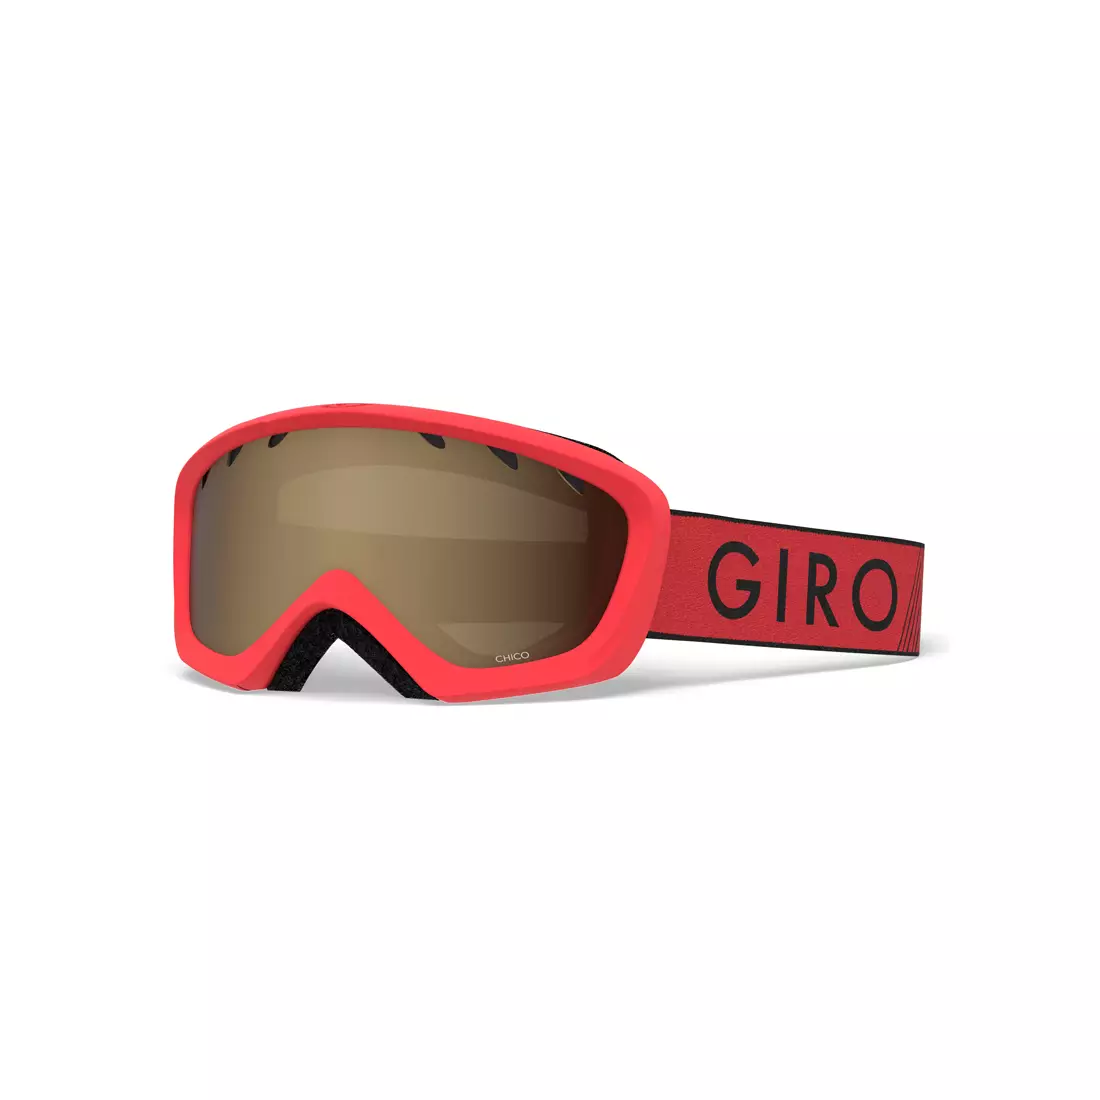 Junior Ski-/Snowboardbrille CHICO RED BLACK ZOOM GR-7083076